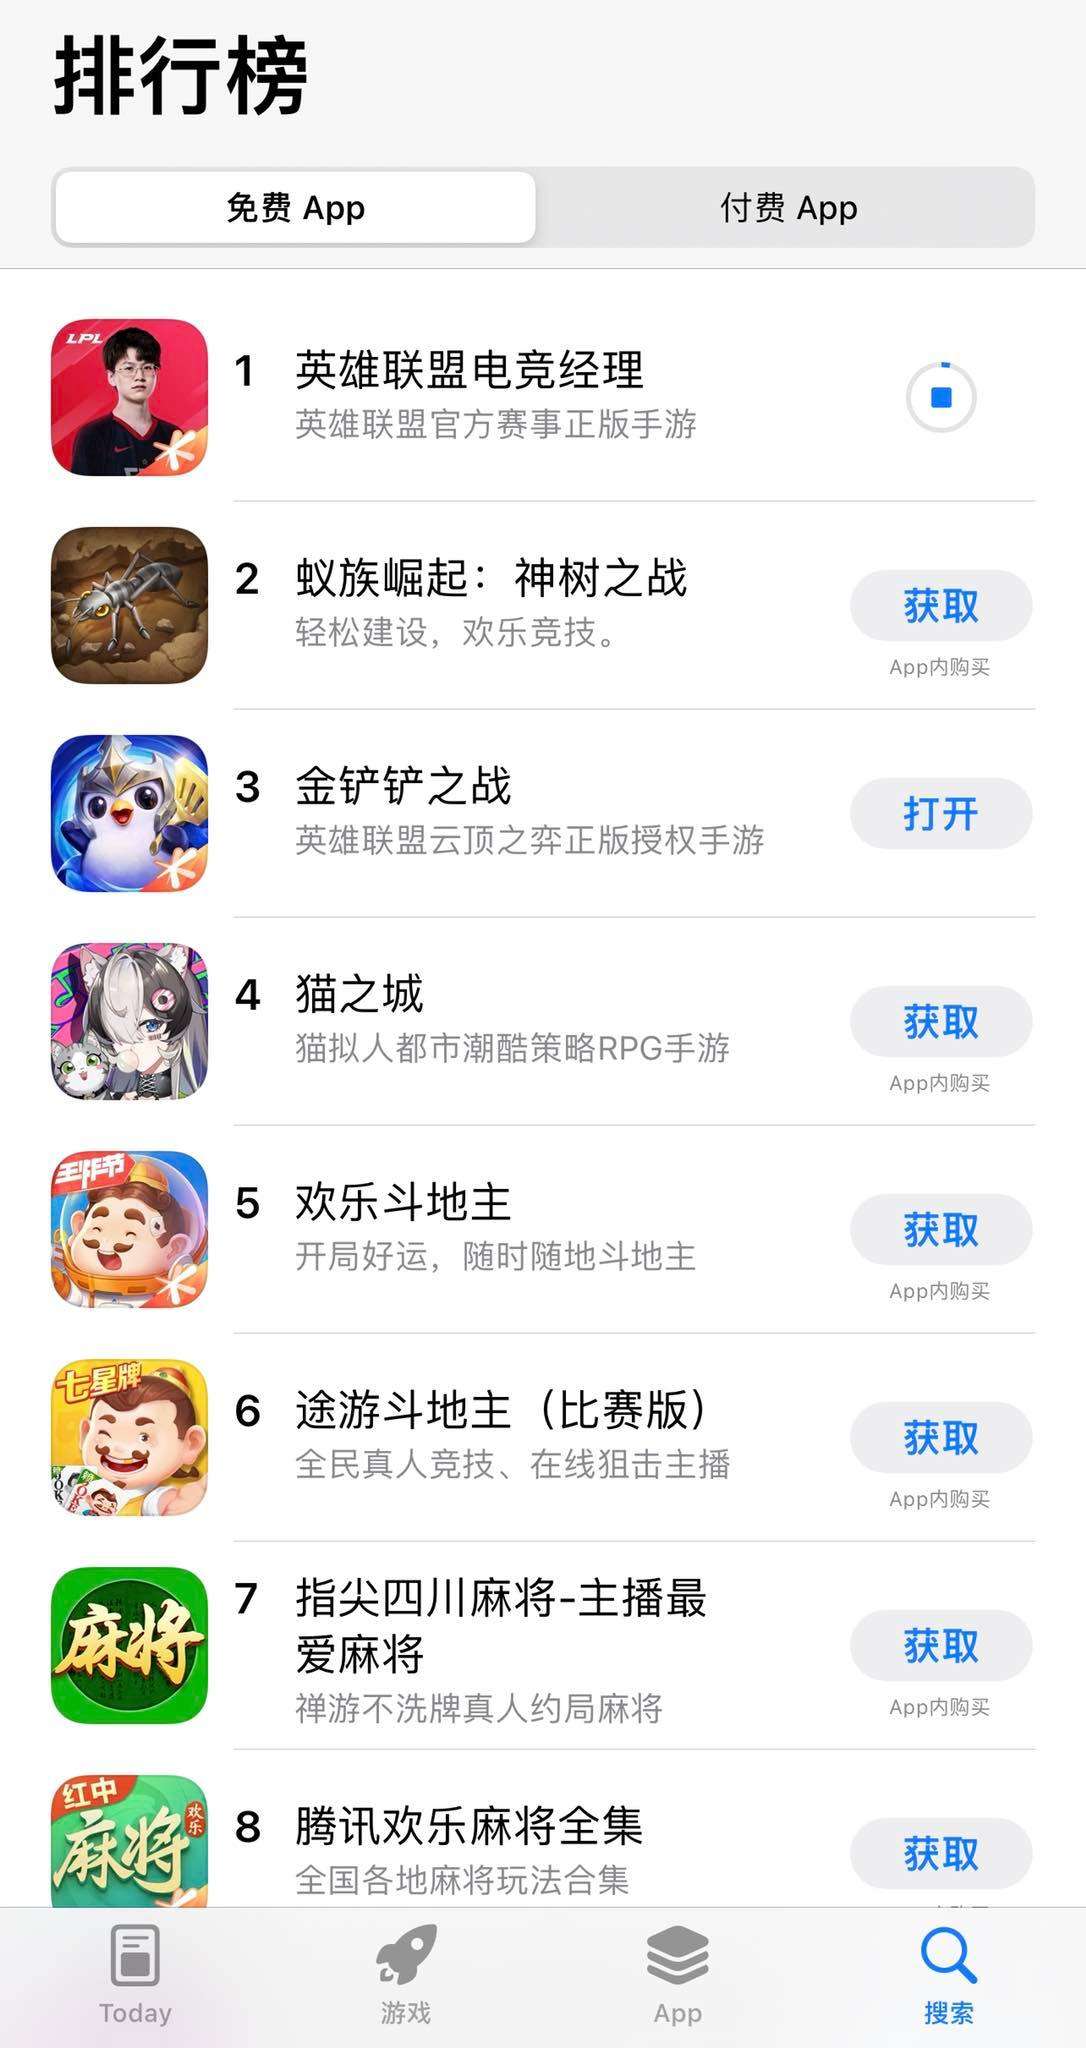 LoL Esports Manager đã giành được vị trí top 1 và đẩy phiên bản DTCL của Trung Quốc lên top 3.